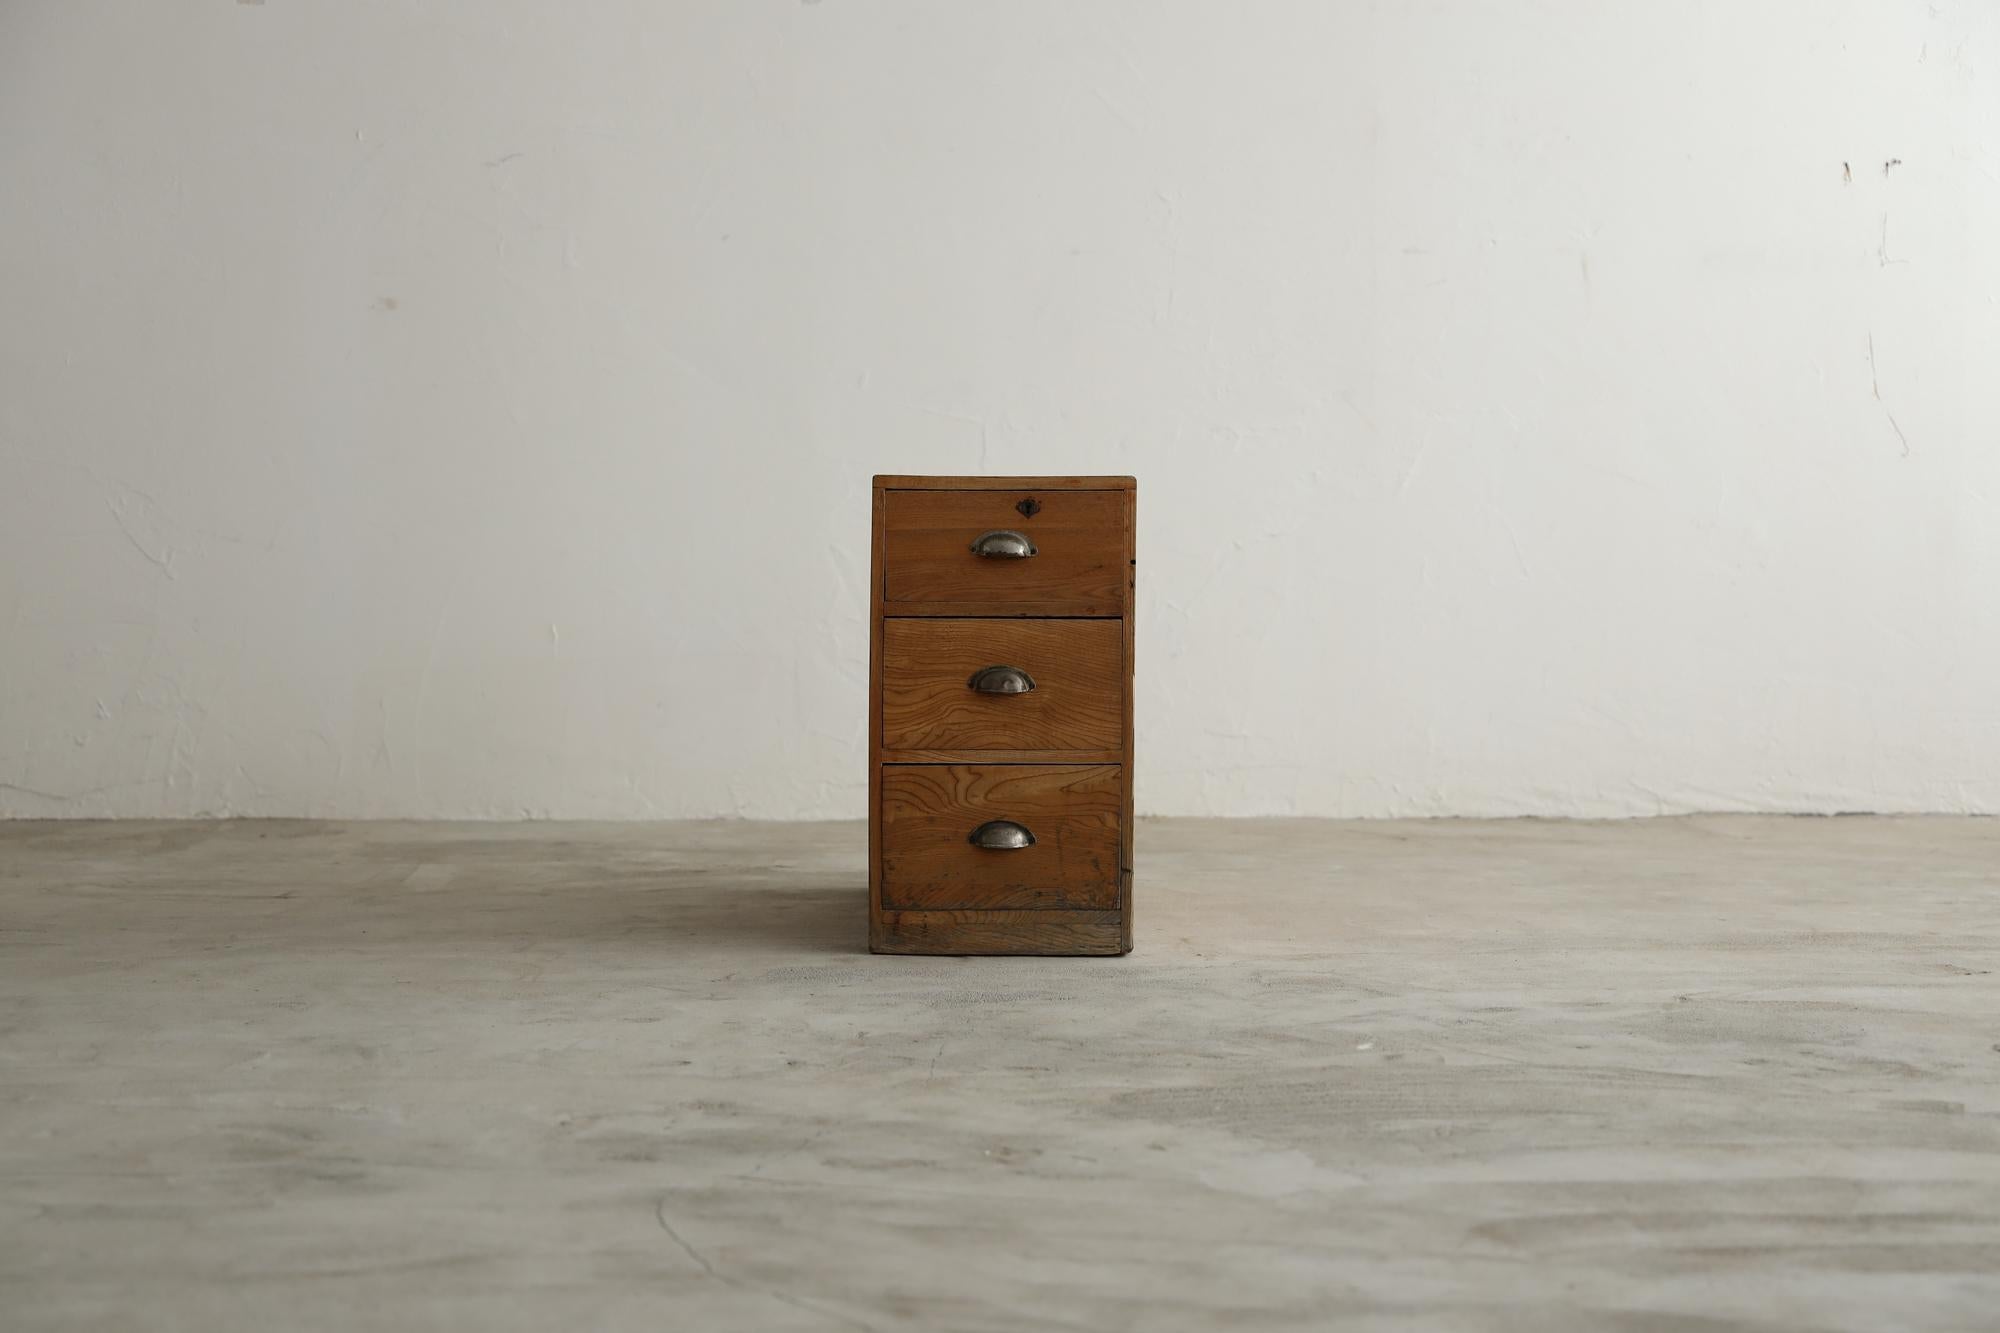 Il s'agit d'un ancien tiroir japonais de l'ère Taisho. Ce meuble a été fabriqué selon la même tradition et les mêmes techniques avancées que les sanctuaires japonais. 

Le bois de Sen vieilli lui confère un aspect à la fois rustique et raffiné, avec